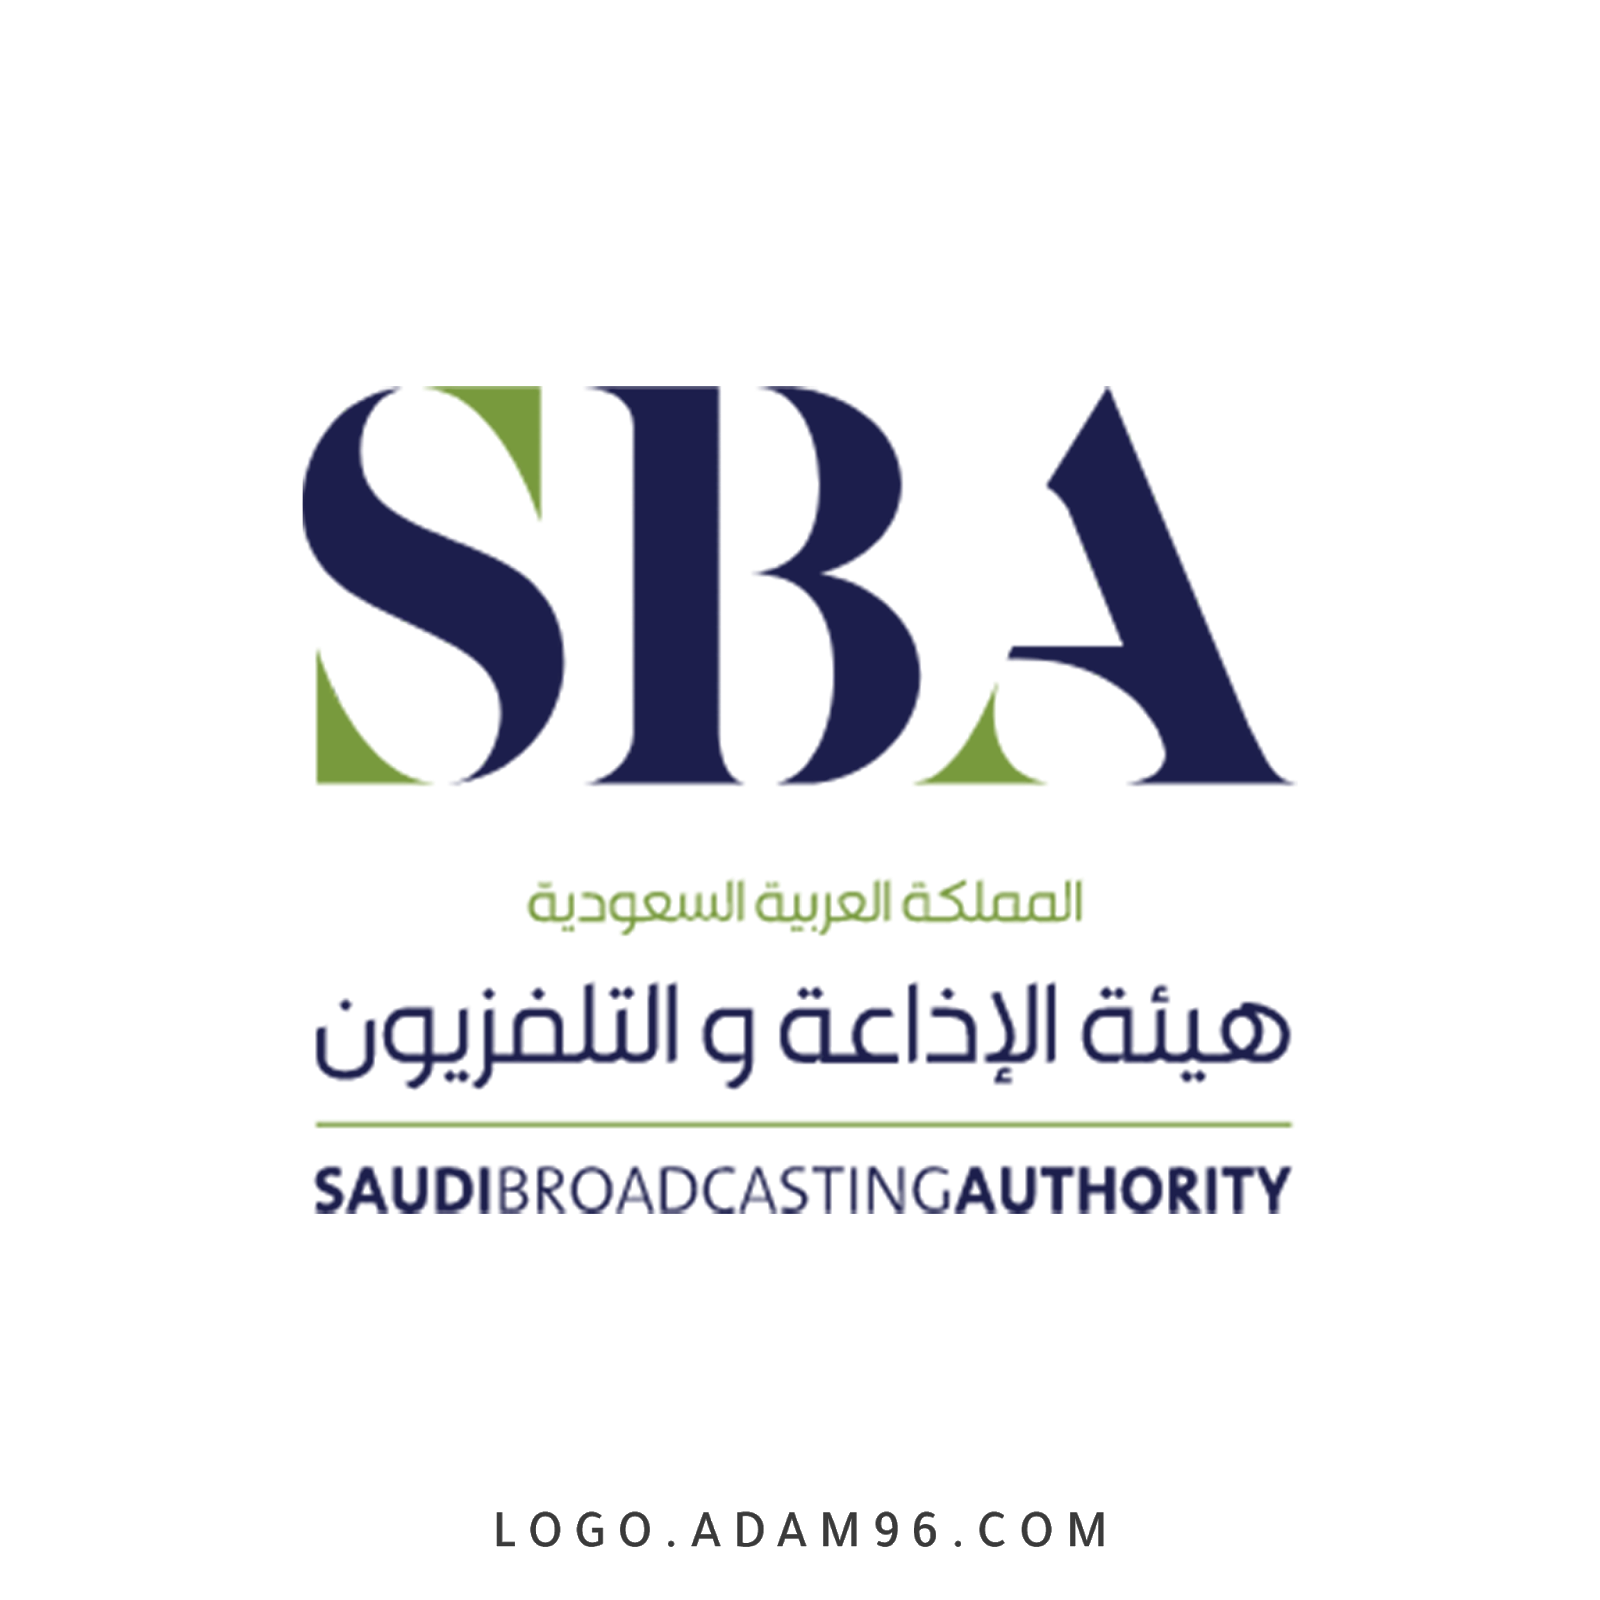 تحميل الشعار الرسمي هيئة الاذاعة والتلفزيون السعودية عالي الجودة بصيغة Png